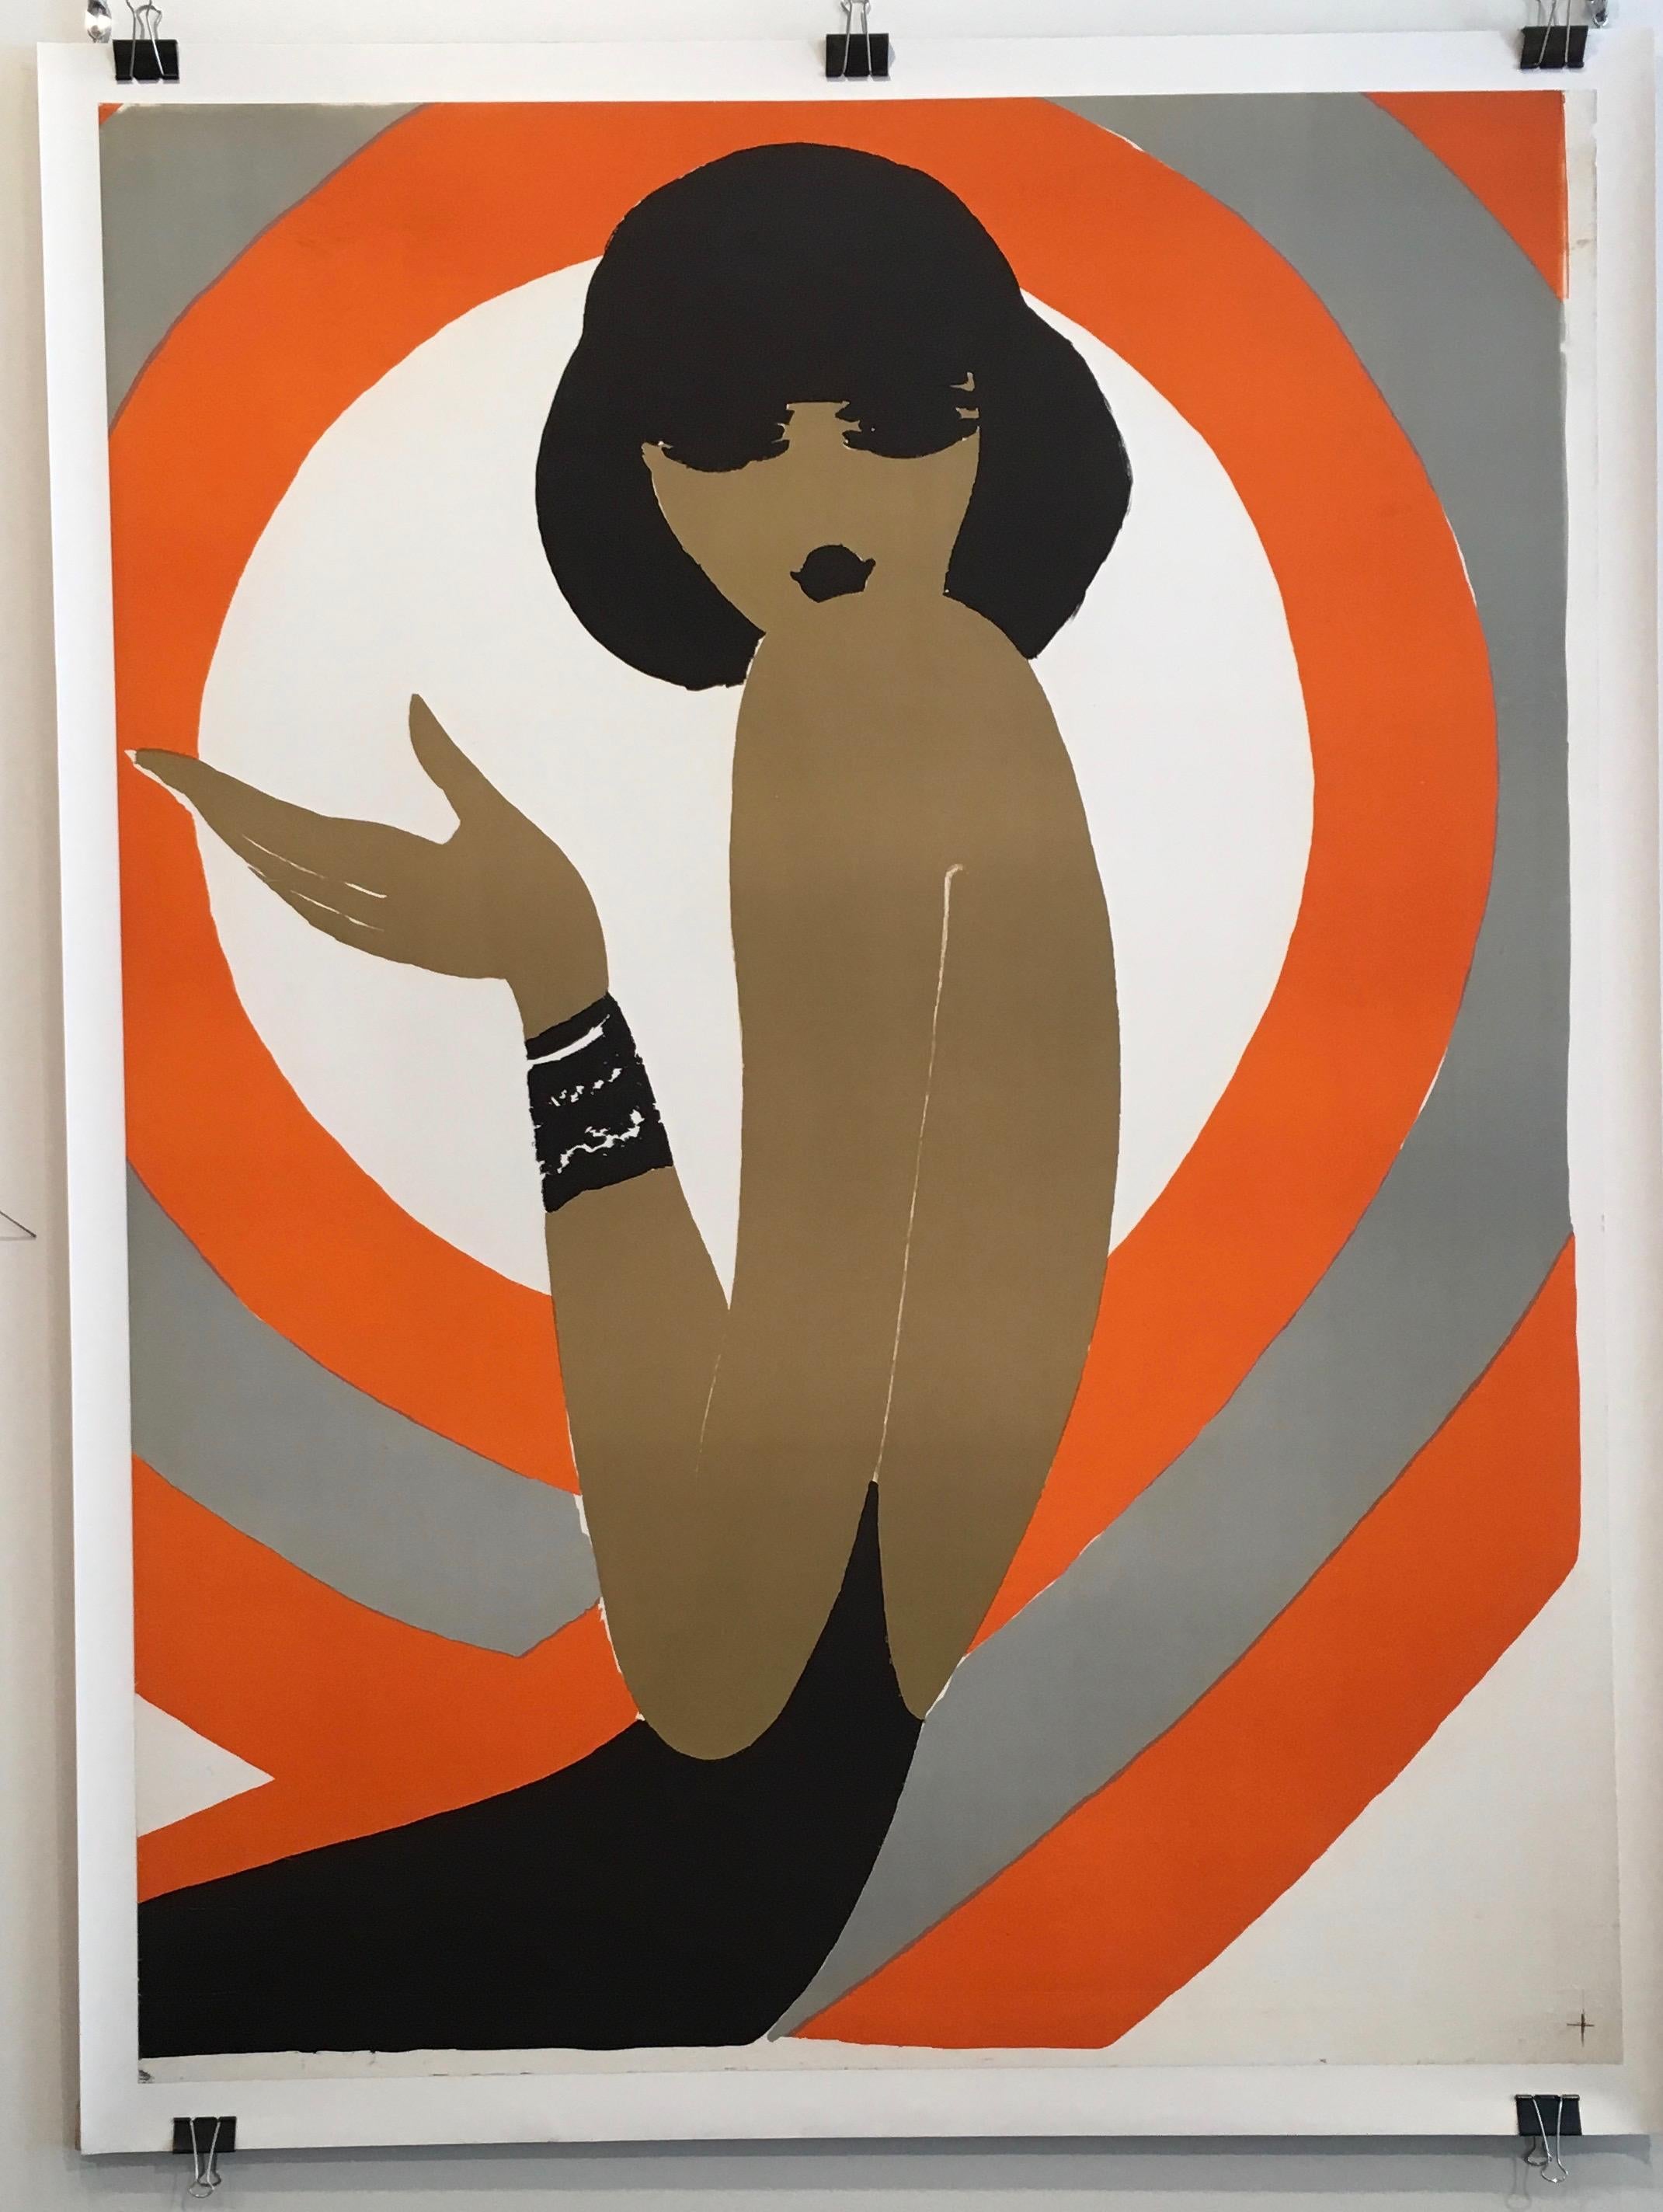 Französisch Original Vintage Mode Plakat von Villemot 'Spirale Orange 1970'

Es handelt sich um ein originales lithografiertes Plakat von Villemot, das für das französische Modekaufhaus 